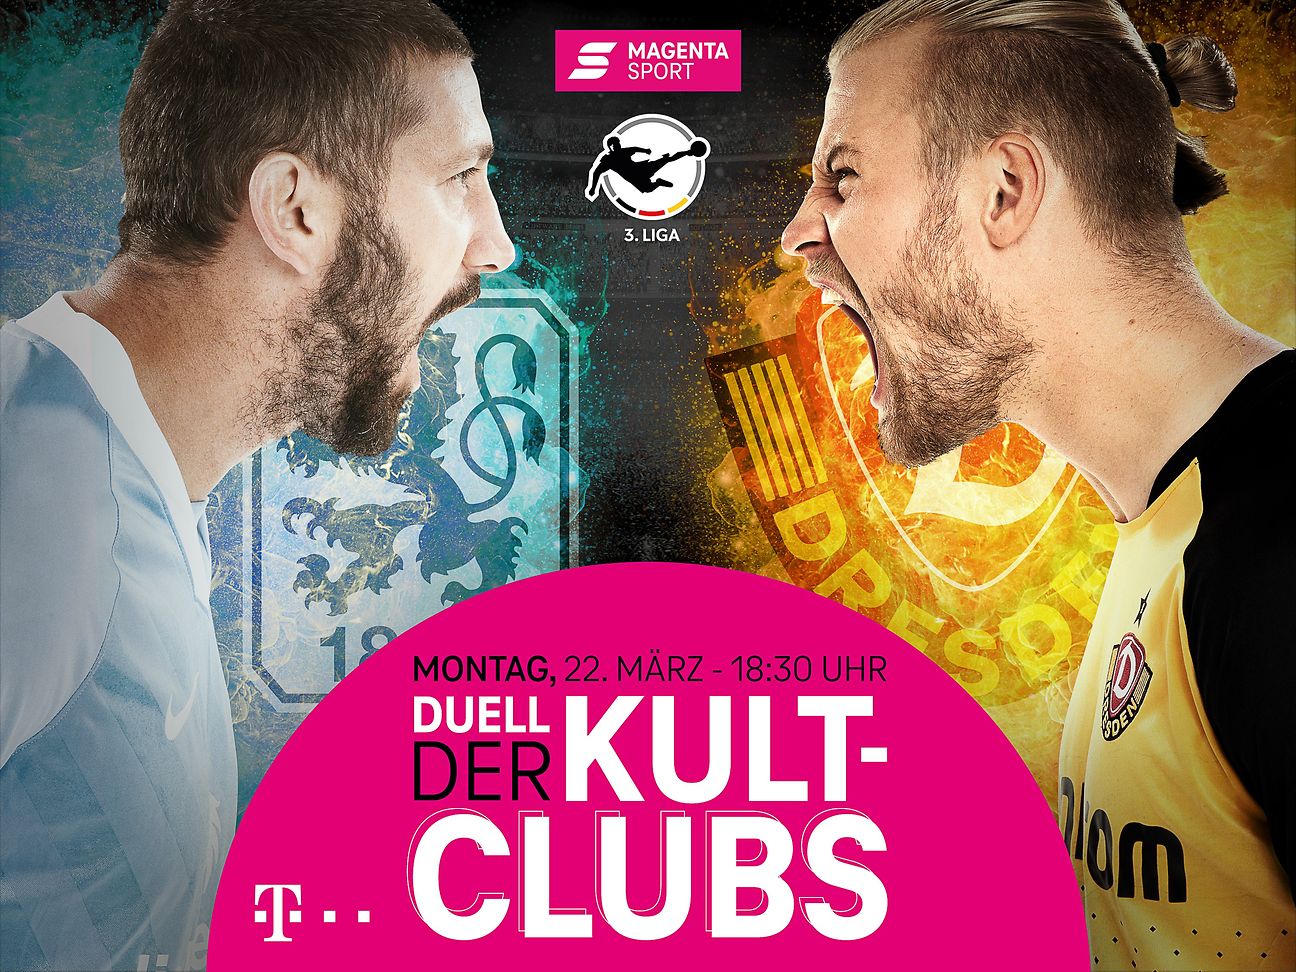 Duell der Kult-Clubs live und als Free TV-Angebot exklusiv bei MagentaSport Deutsche Telekom